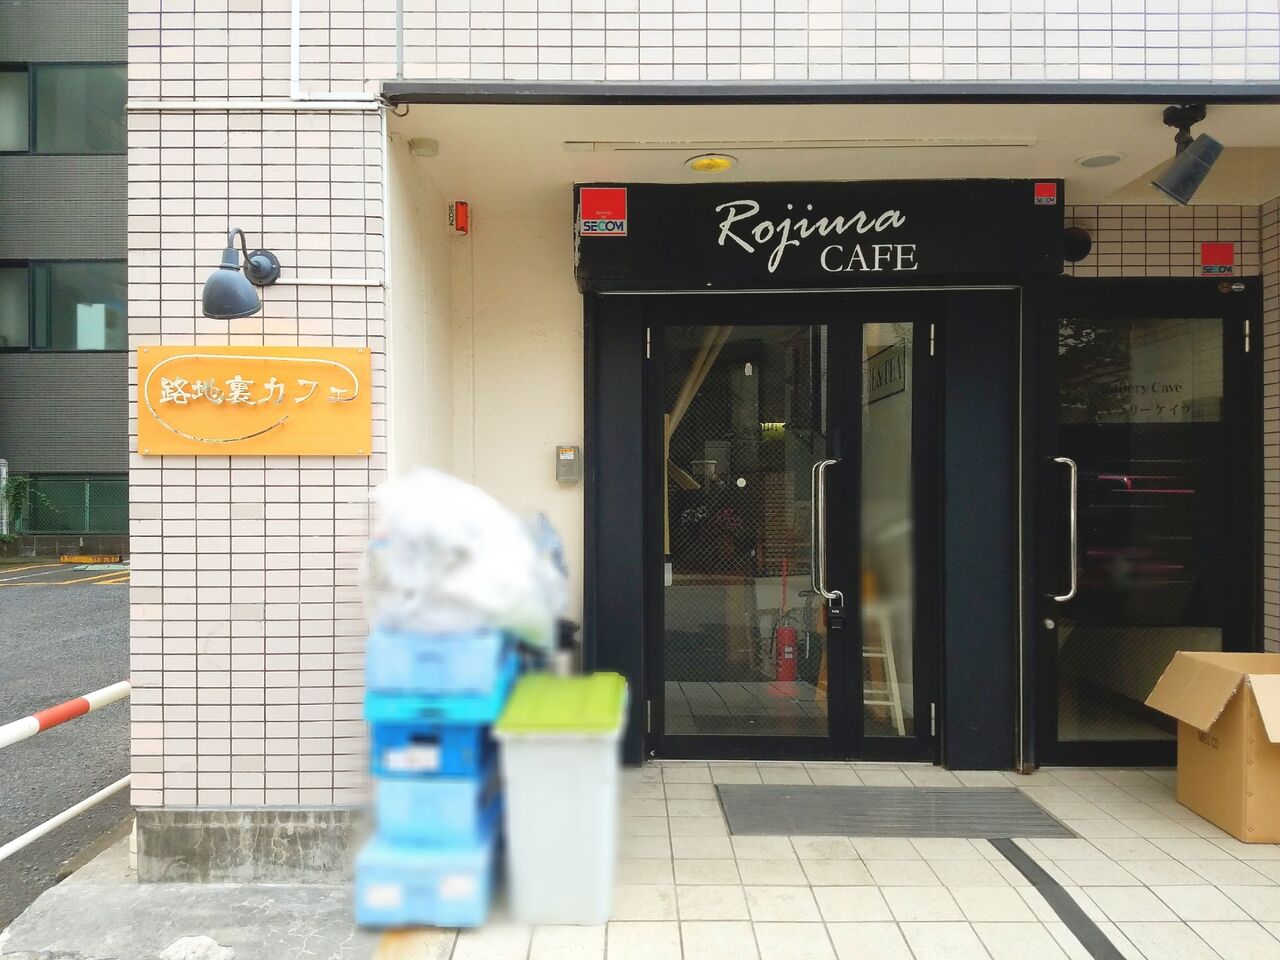 中央区弁天に 路地裏カフェ Rojiura Cafe なるカフェがオープンするらしい ちば通信 千葉県千葉市の地域情報サイト